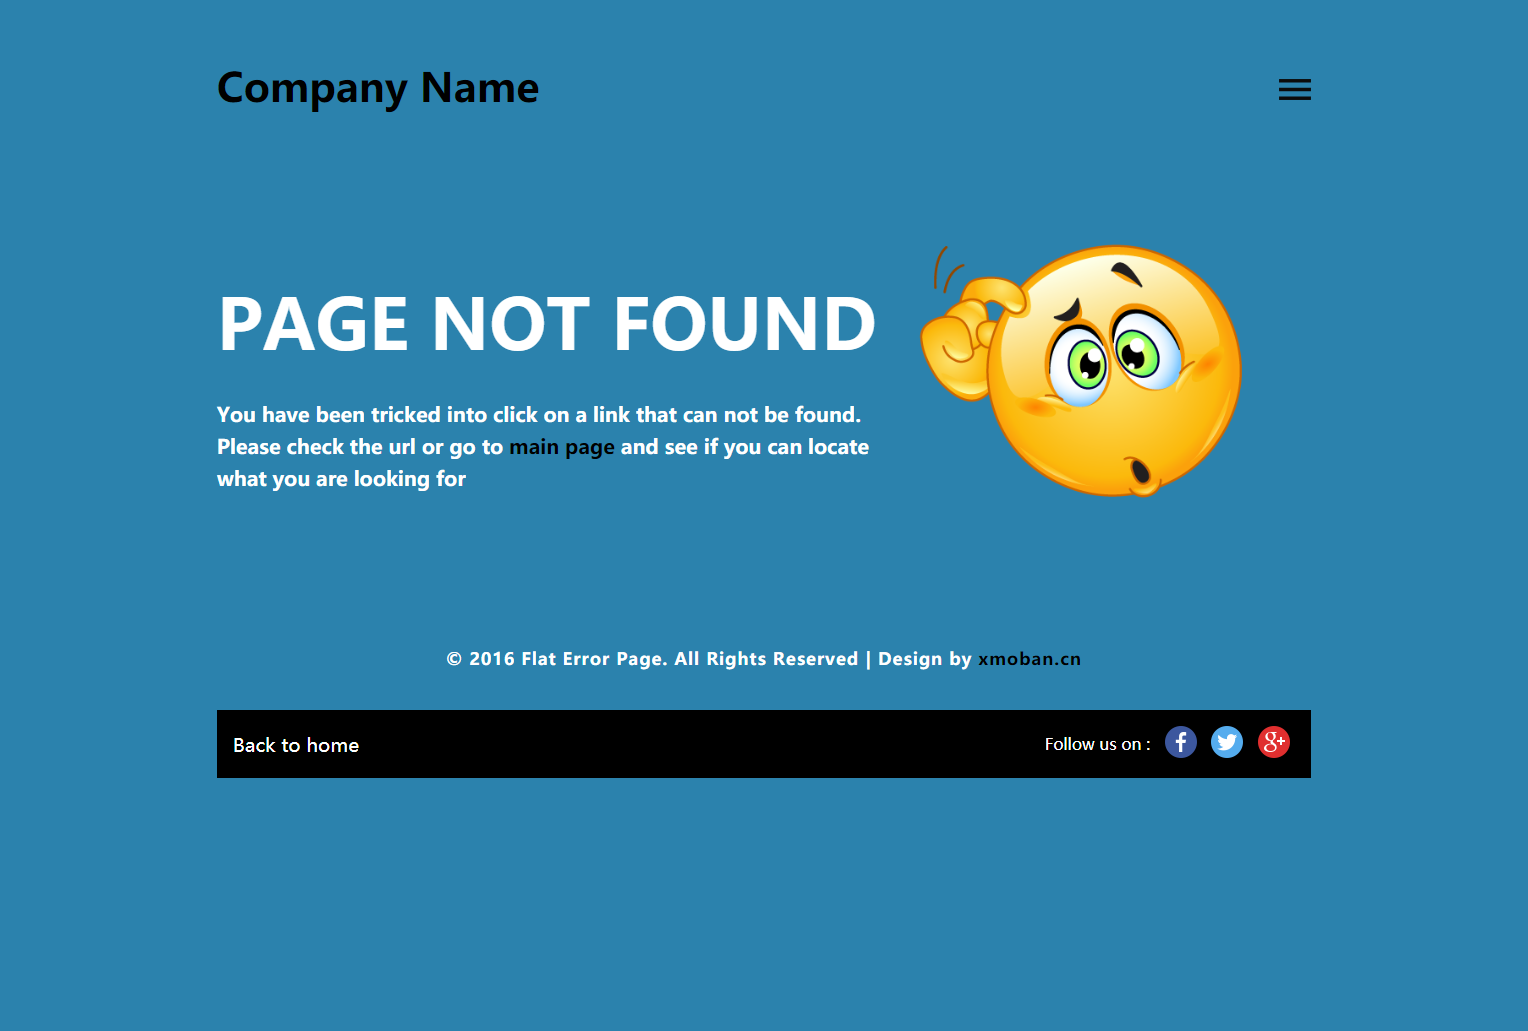 蓝色欧美风格的404错误页源码下载